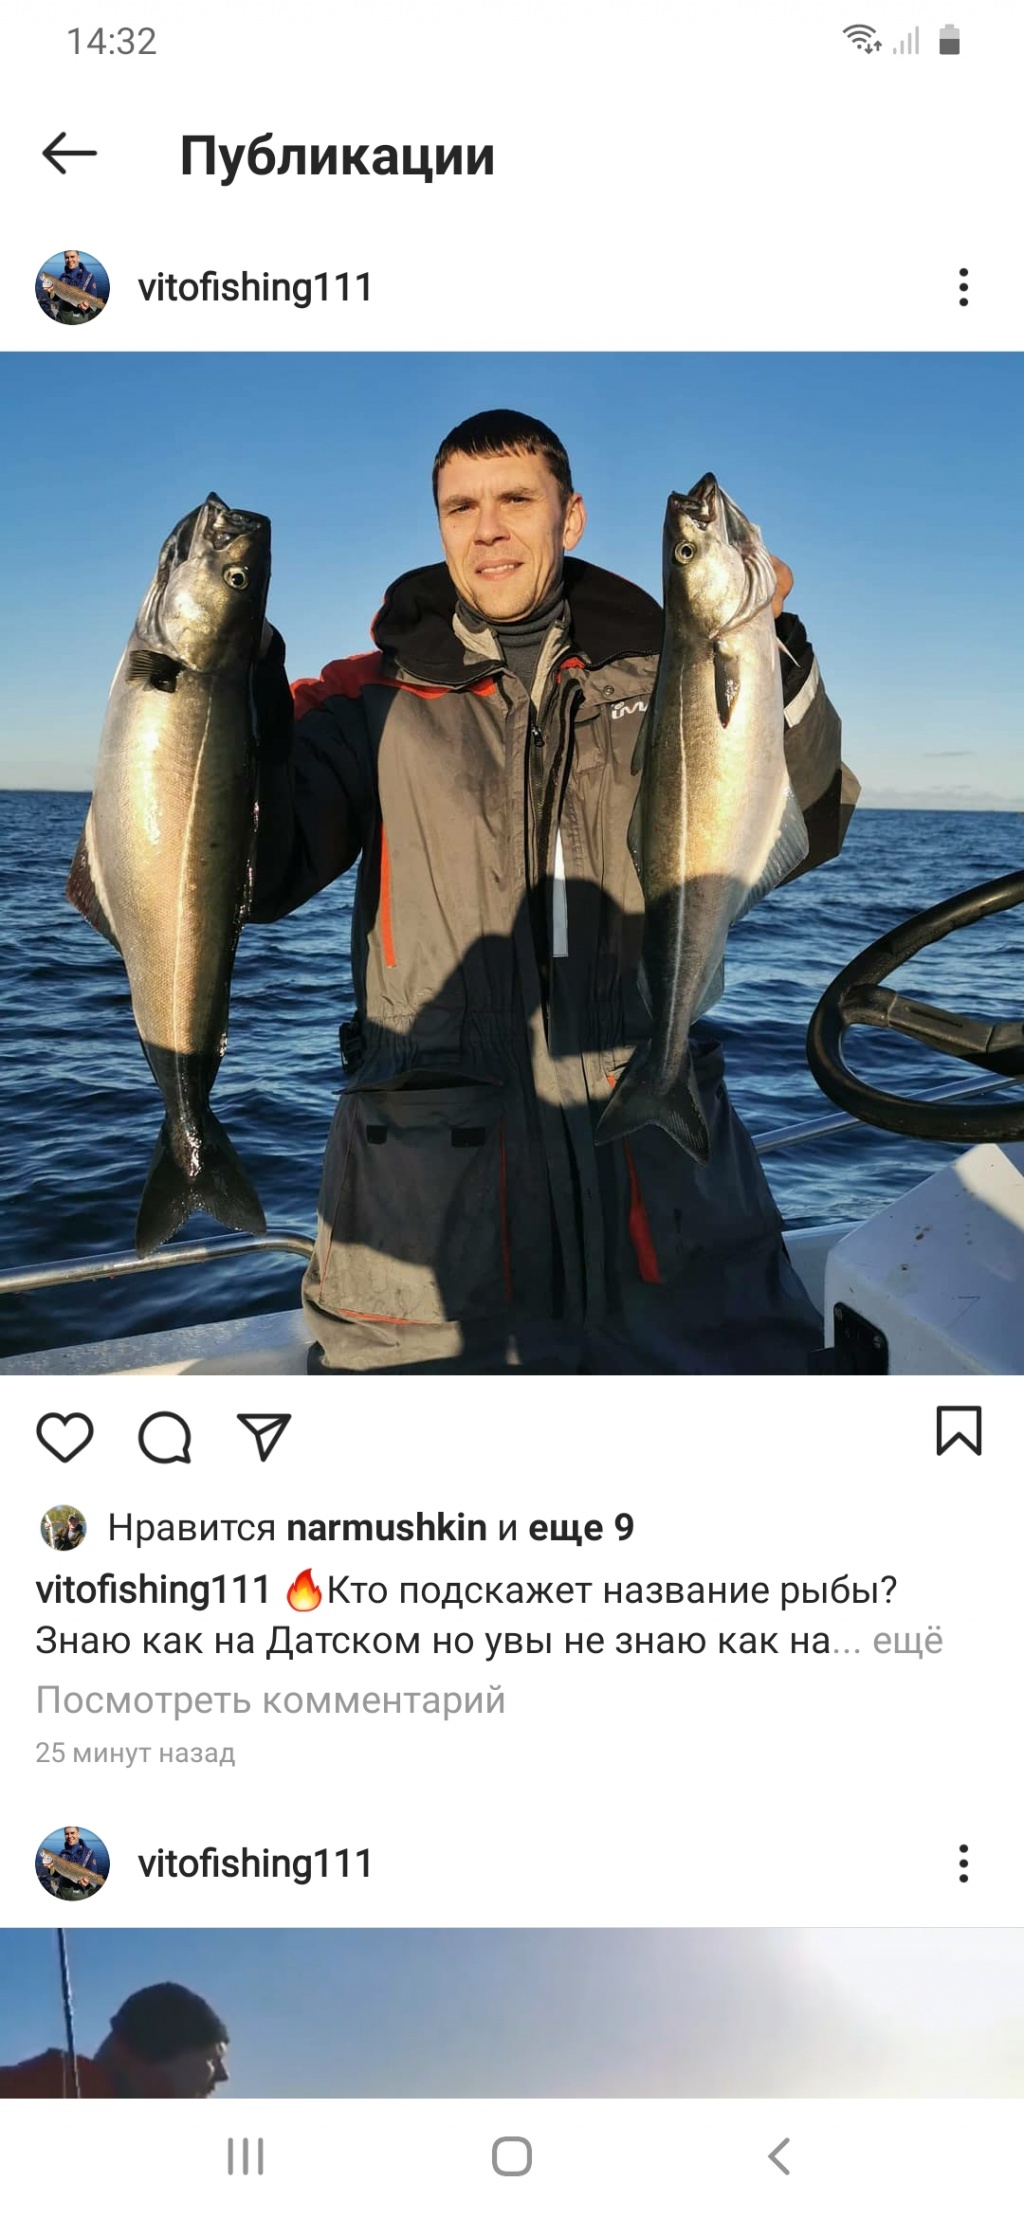 Andrey из «Nakskov .Дания» просит распознать рыбу по фото